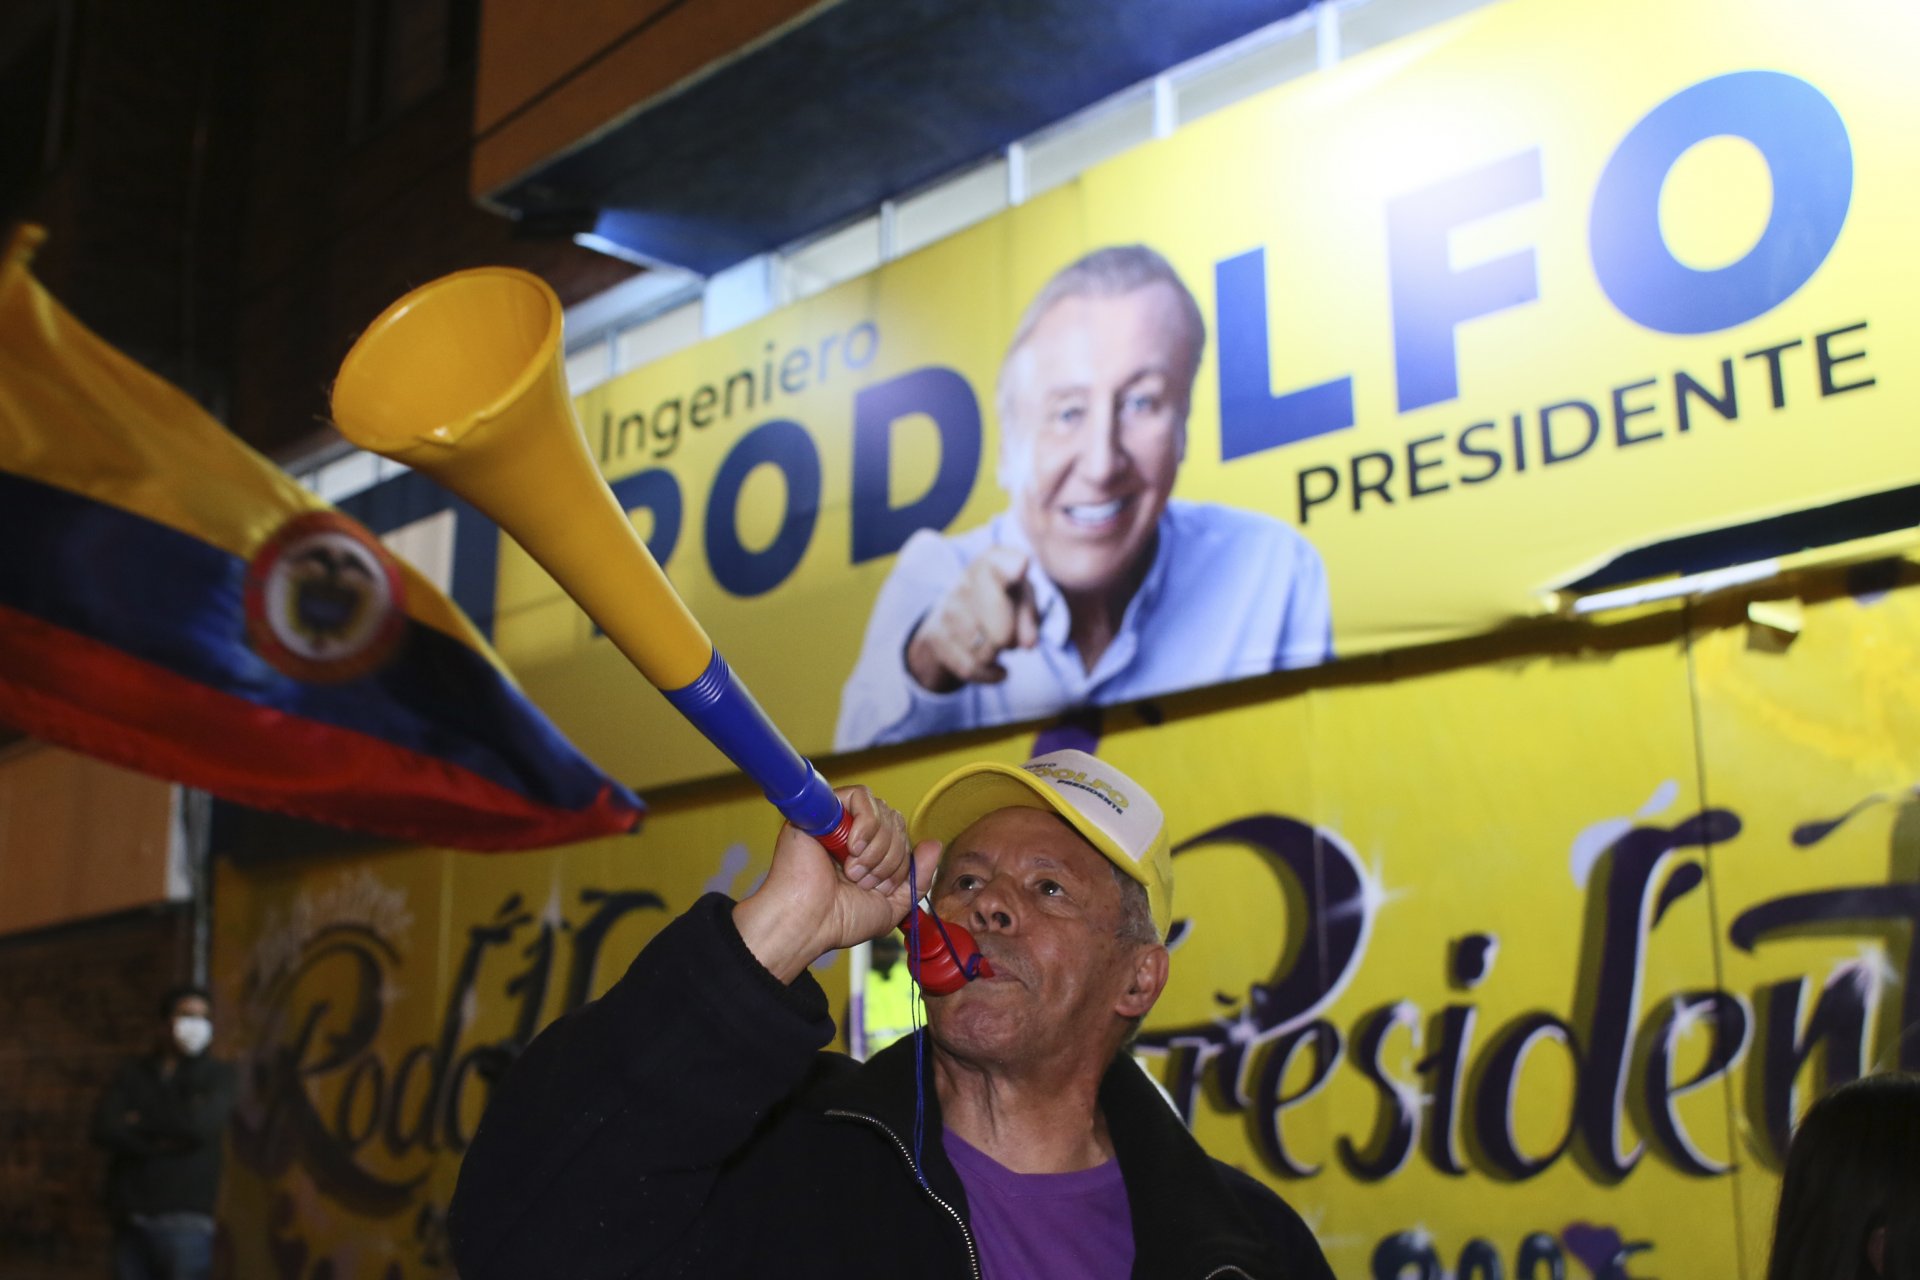 Привърженик на Родолфо Ернандес, кандидат за президент надува рог пред надписите на кампанията на кандидата в изборната нощ в Богота